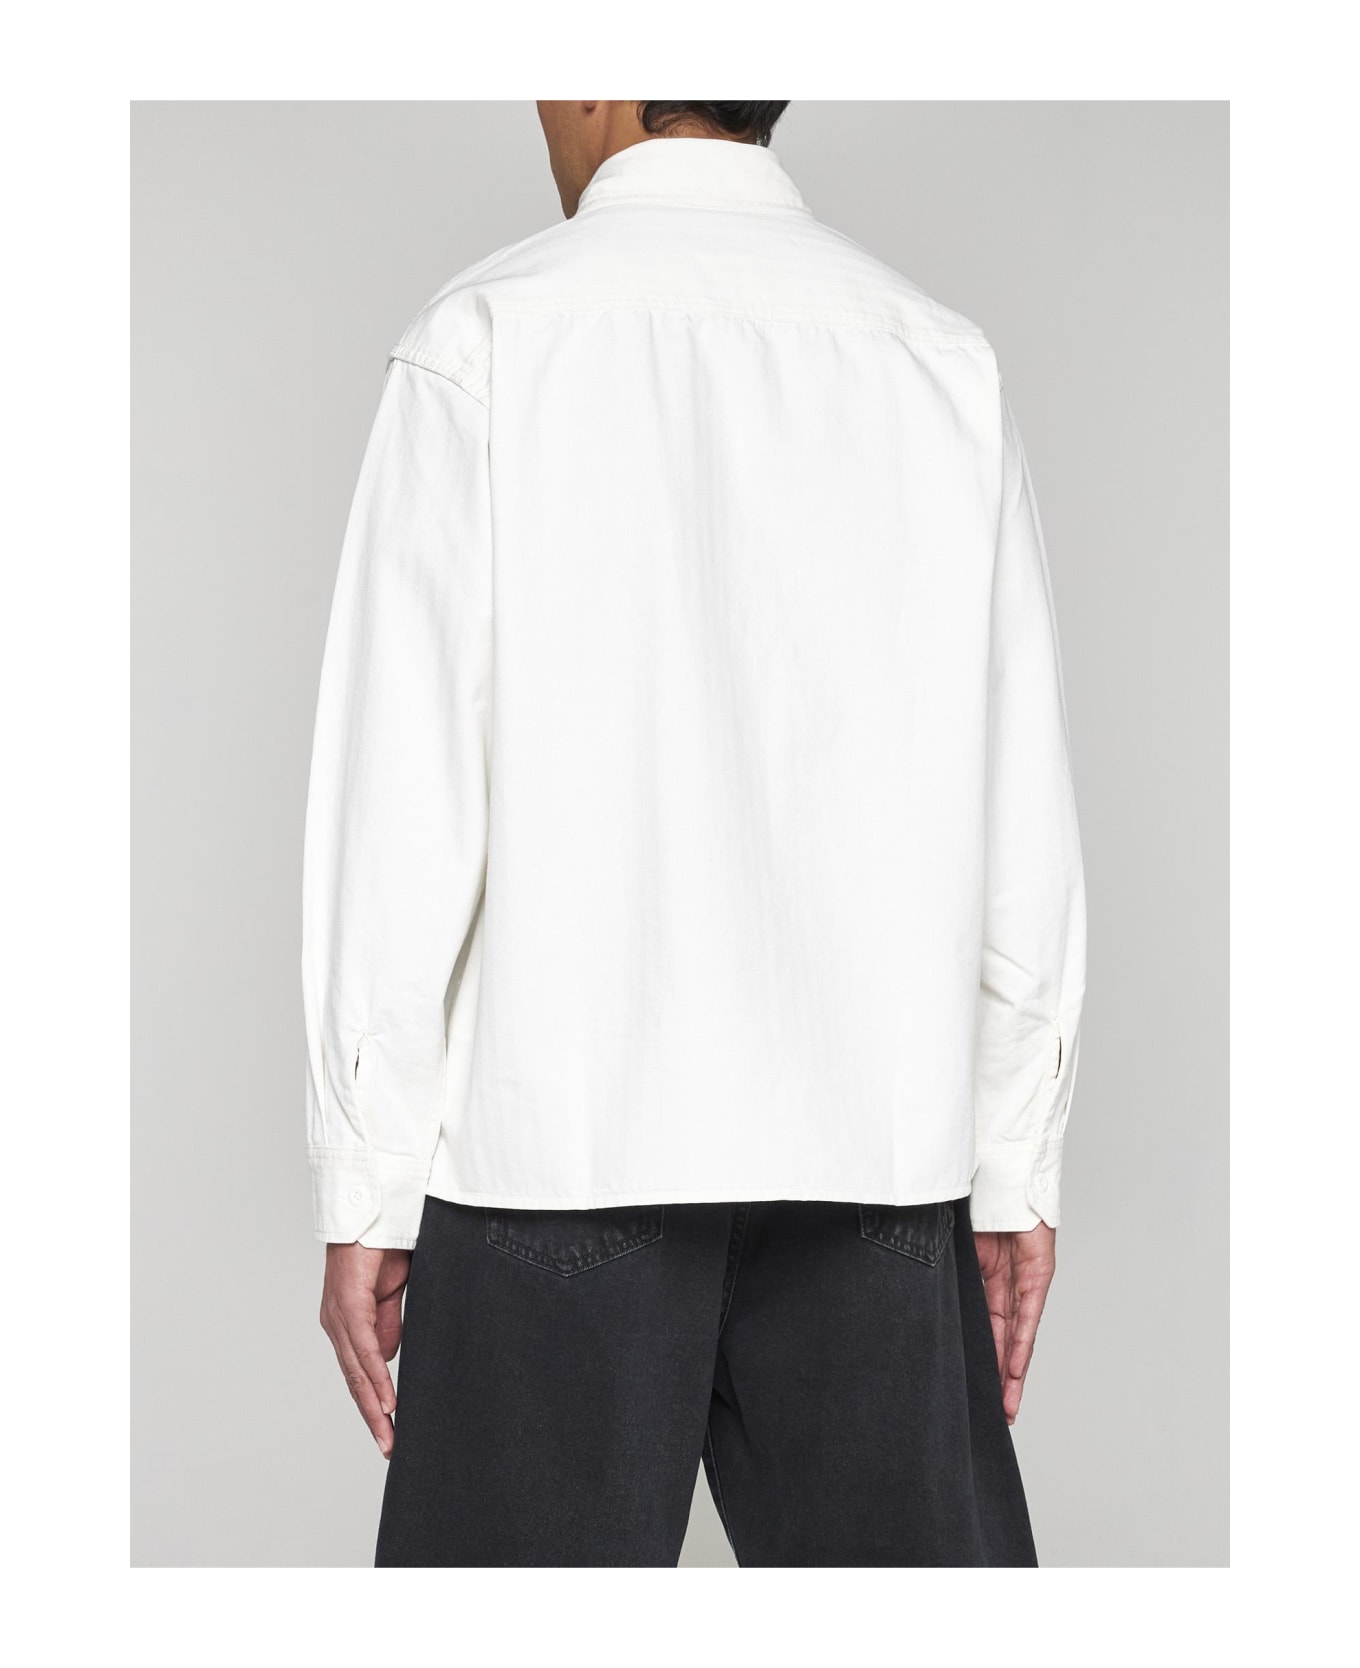 Carhartt Redmond Cotton Shirt Jacket - Off white